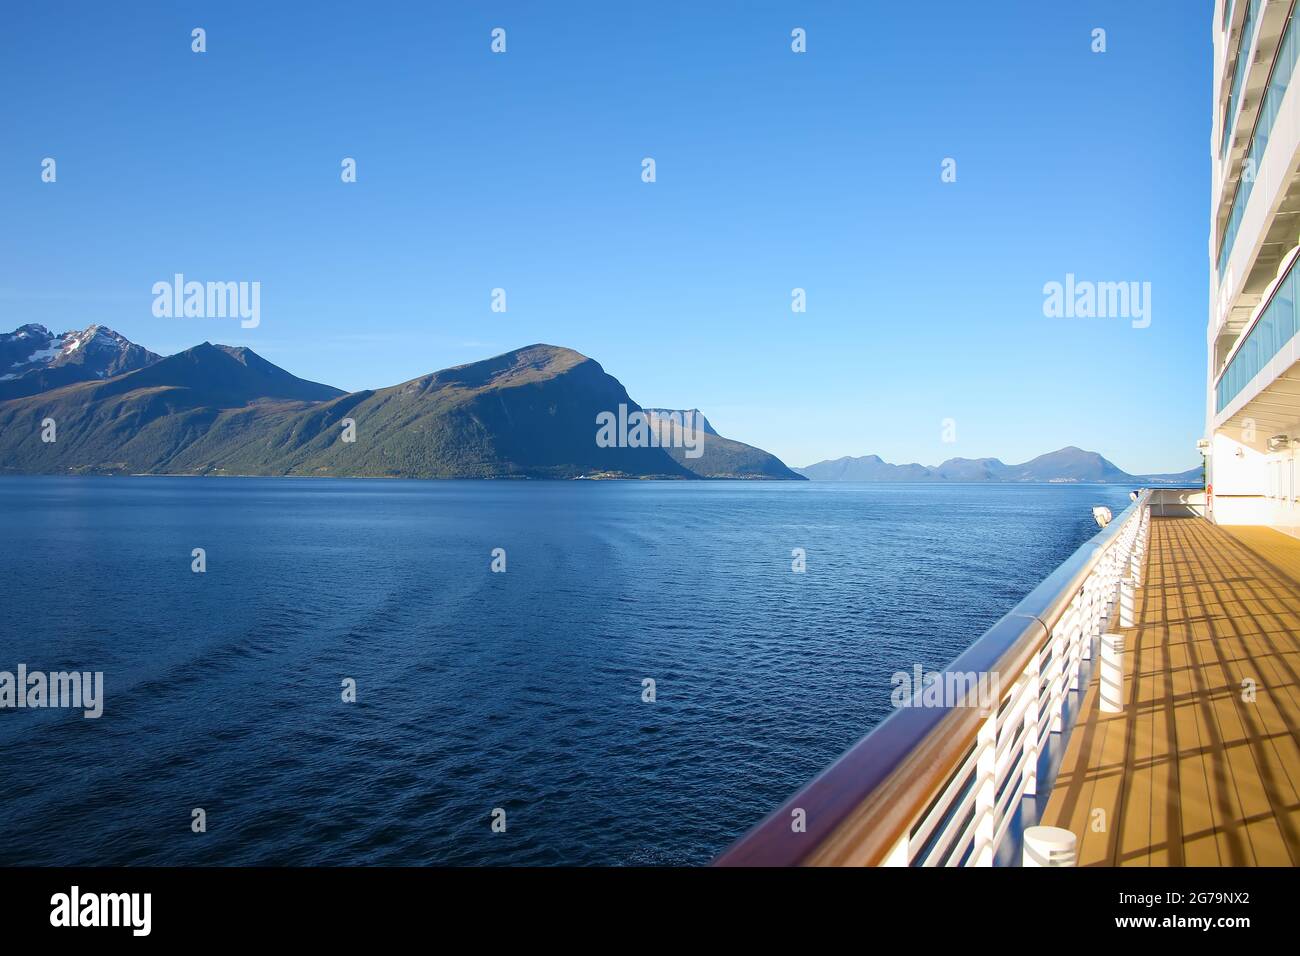 Naviguez vers le fjord de Geiranger lors d'une belle journée calme avec vue sur les montagnes norvégiennes depuis le pont ouvert du navire, Norvège. Banque D'Images